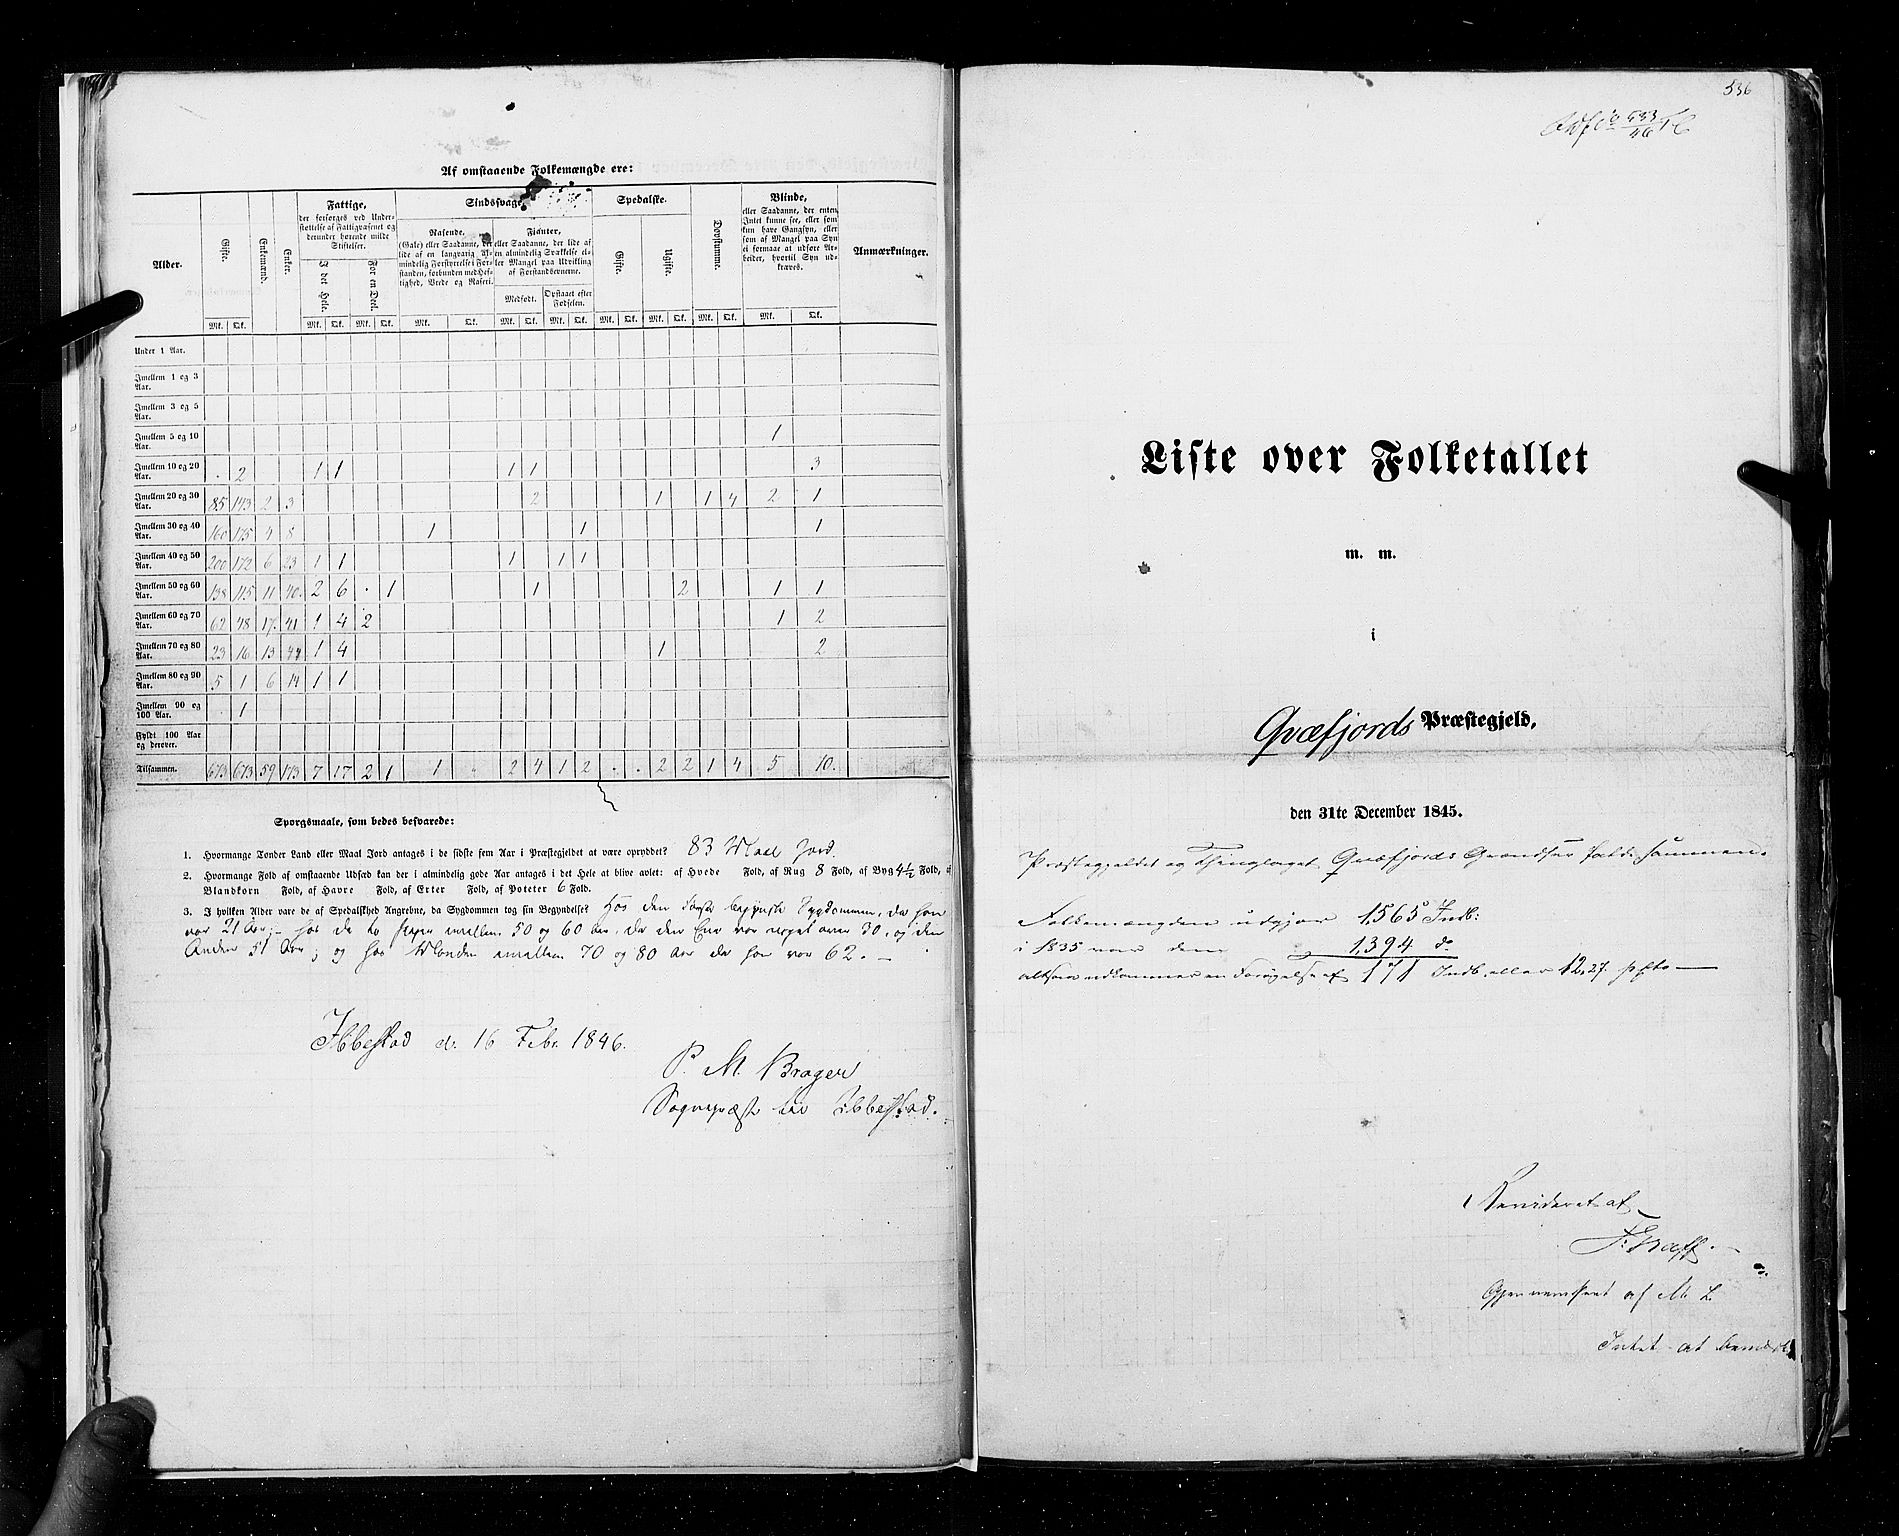 RA, Census 1845, vol. 9C: Finnmarken amt, 1845, p. 536